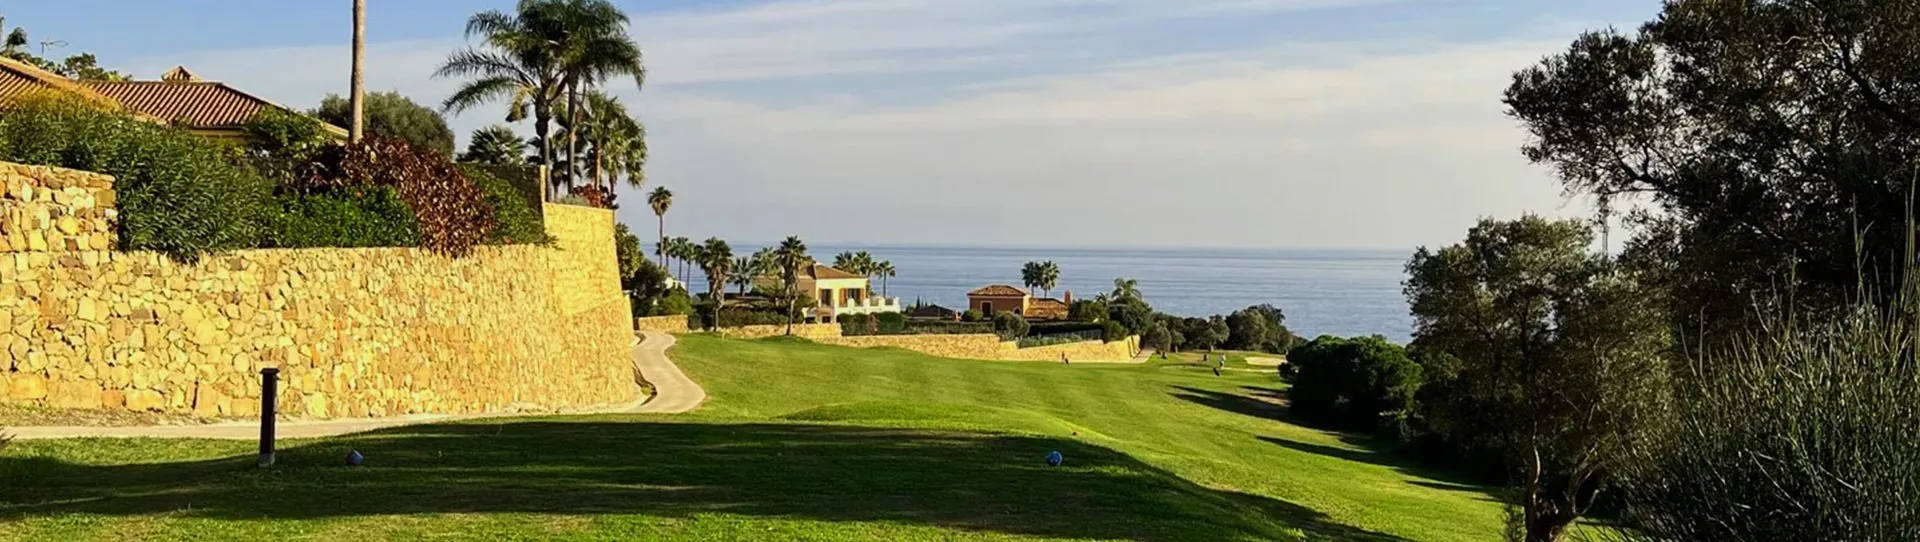 Spain golf courses - La Duquesa Golf - Photo 2